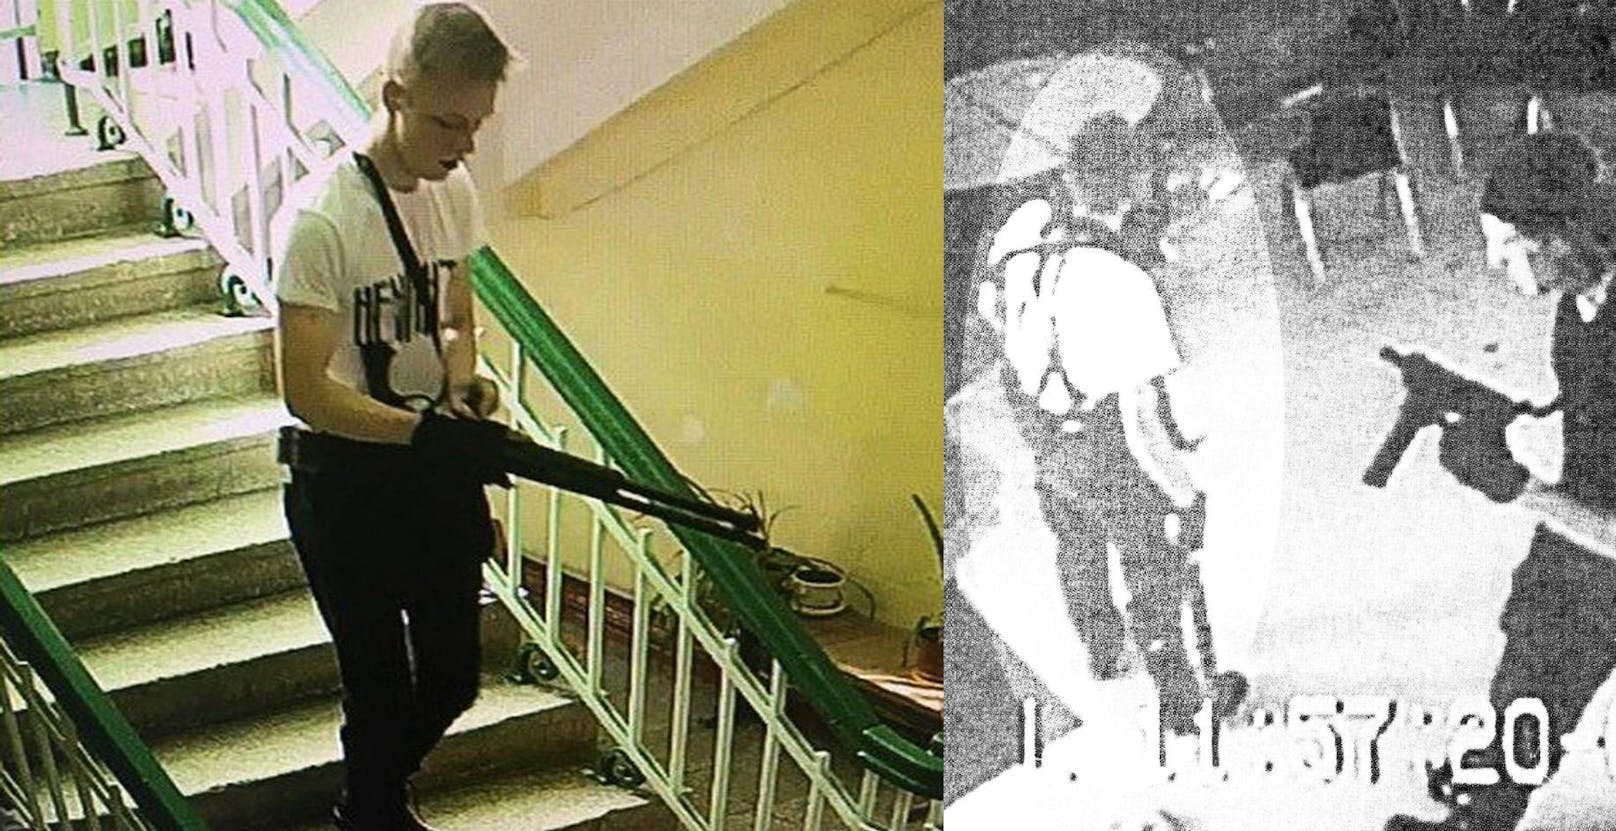 Der Amokläufer auf der Hochschule von Kertsch auf der Krim (l.) und seine "Vorbilder", die Columbine-Amokläufer, an die er sogar sein Outfit anlehnte.